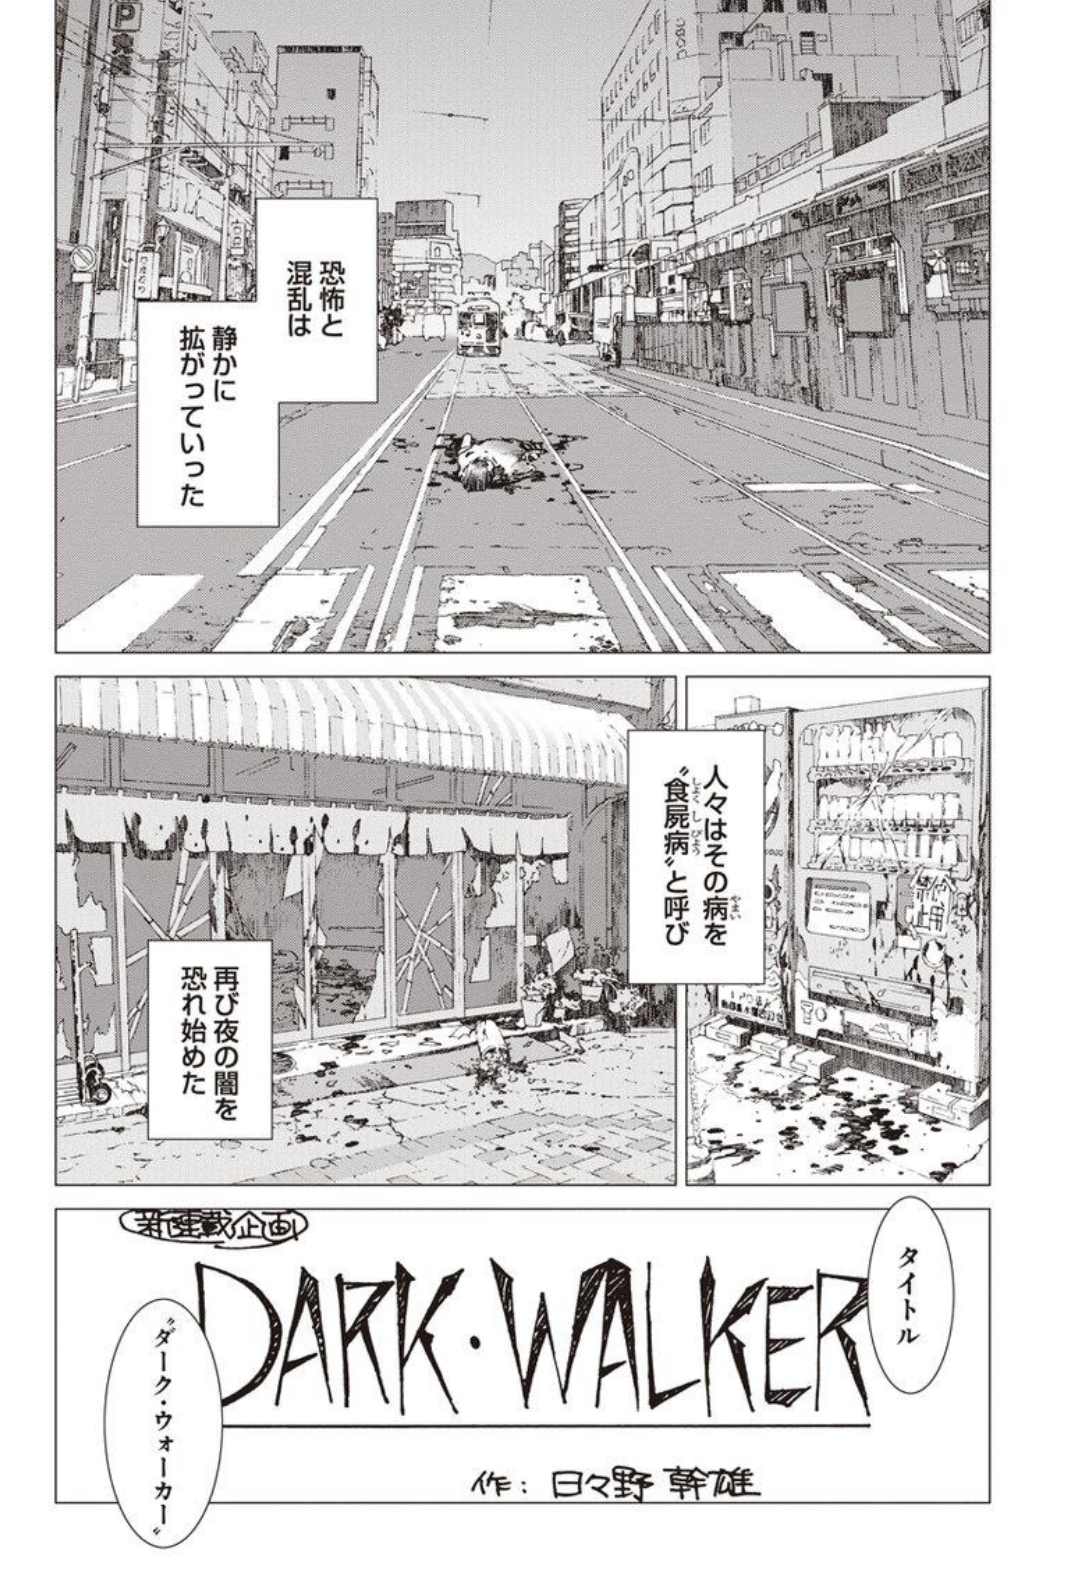 漫画『有害都市』の見所3：恐ろしくも美しい筆致